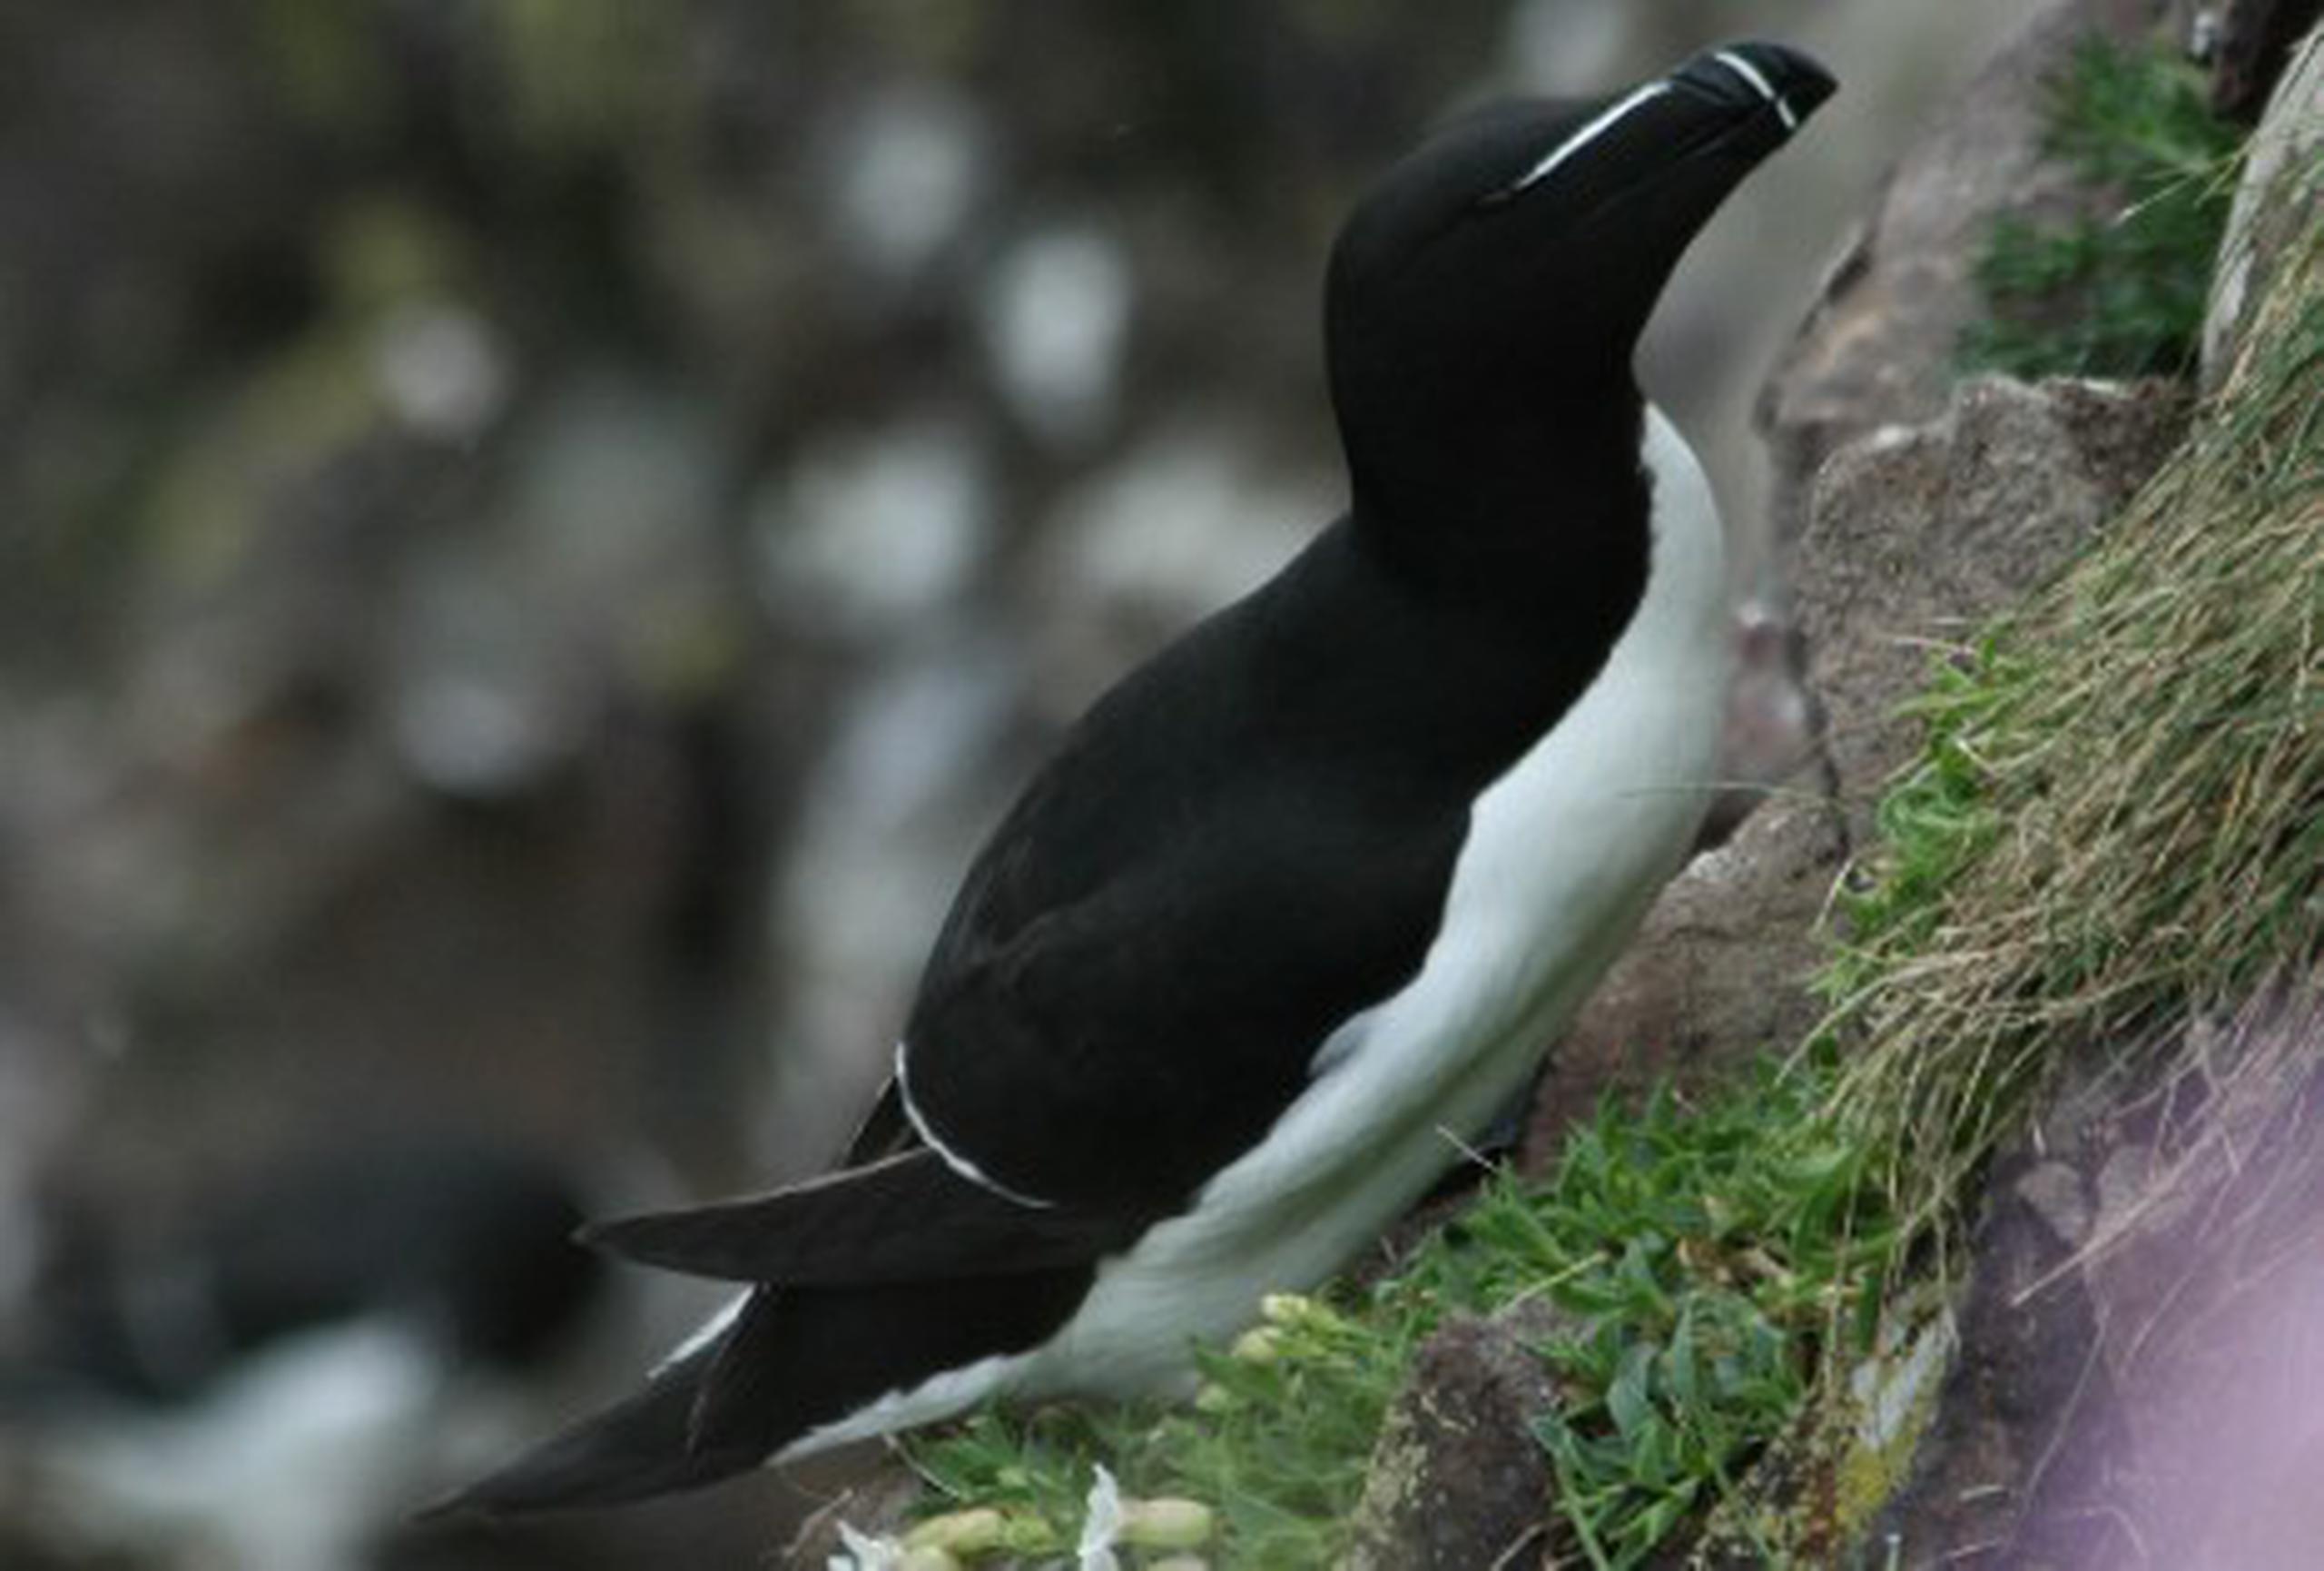 Estas aves pueden andar en tierra erguidas como los pingüinos y anidan en islas, costas rocosas y acantilados del norte del Atlántico. (Archivo)